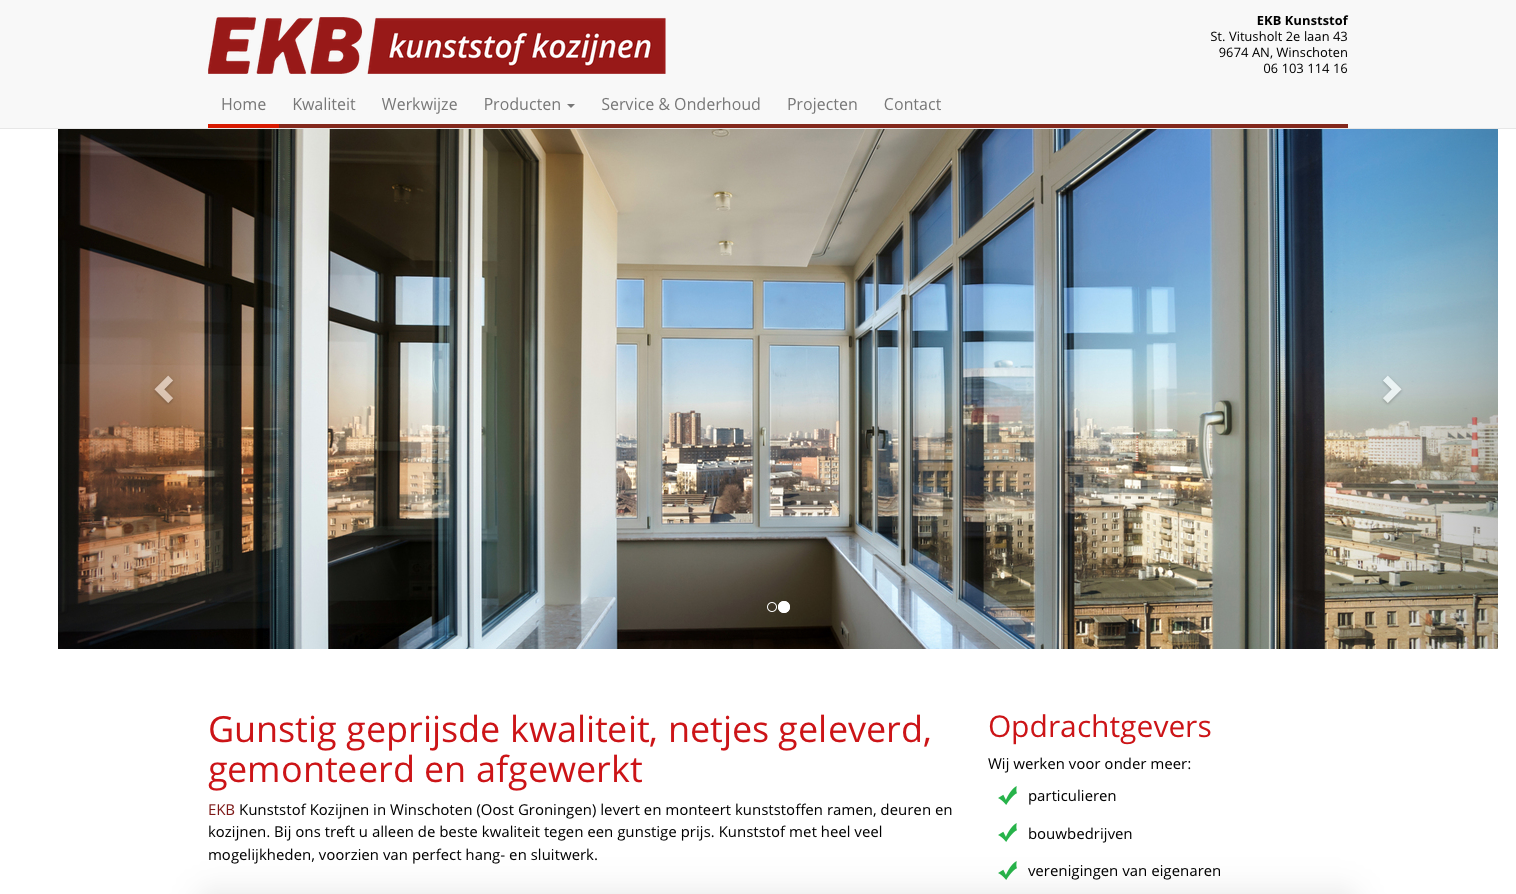 Ten Have Tekst verzorgde de SEO copywriting voor de nieuwe website van EKB Kunststof Kozijnen in Winschoten.